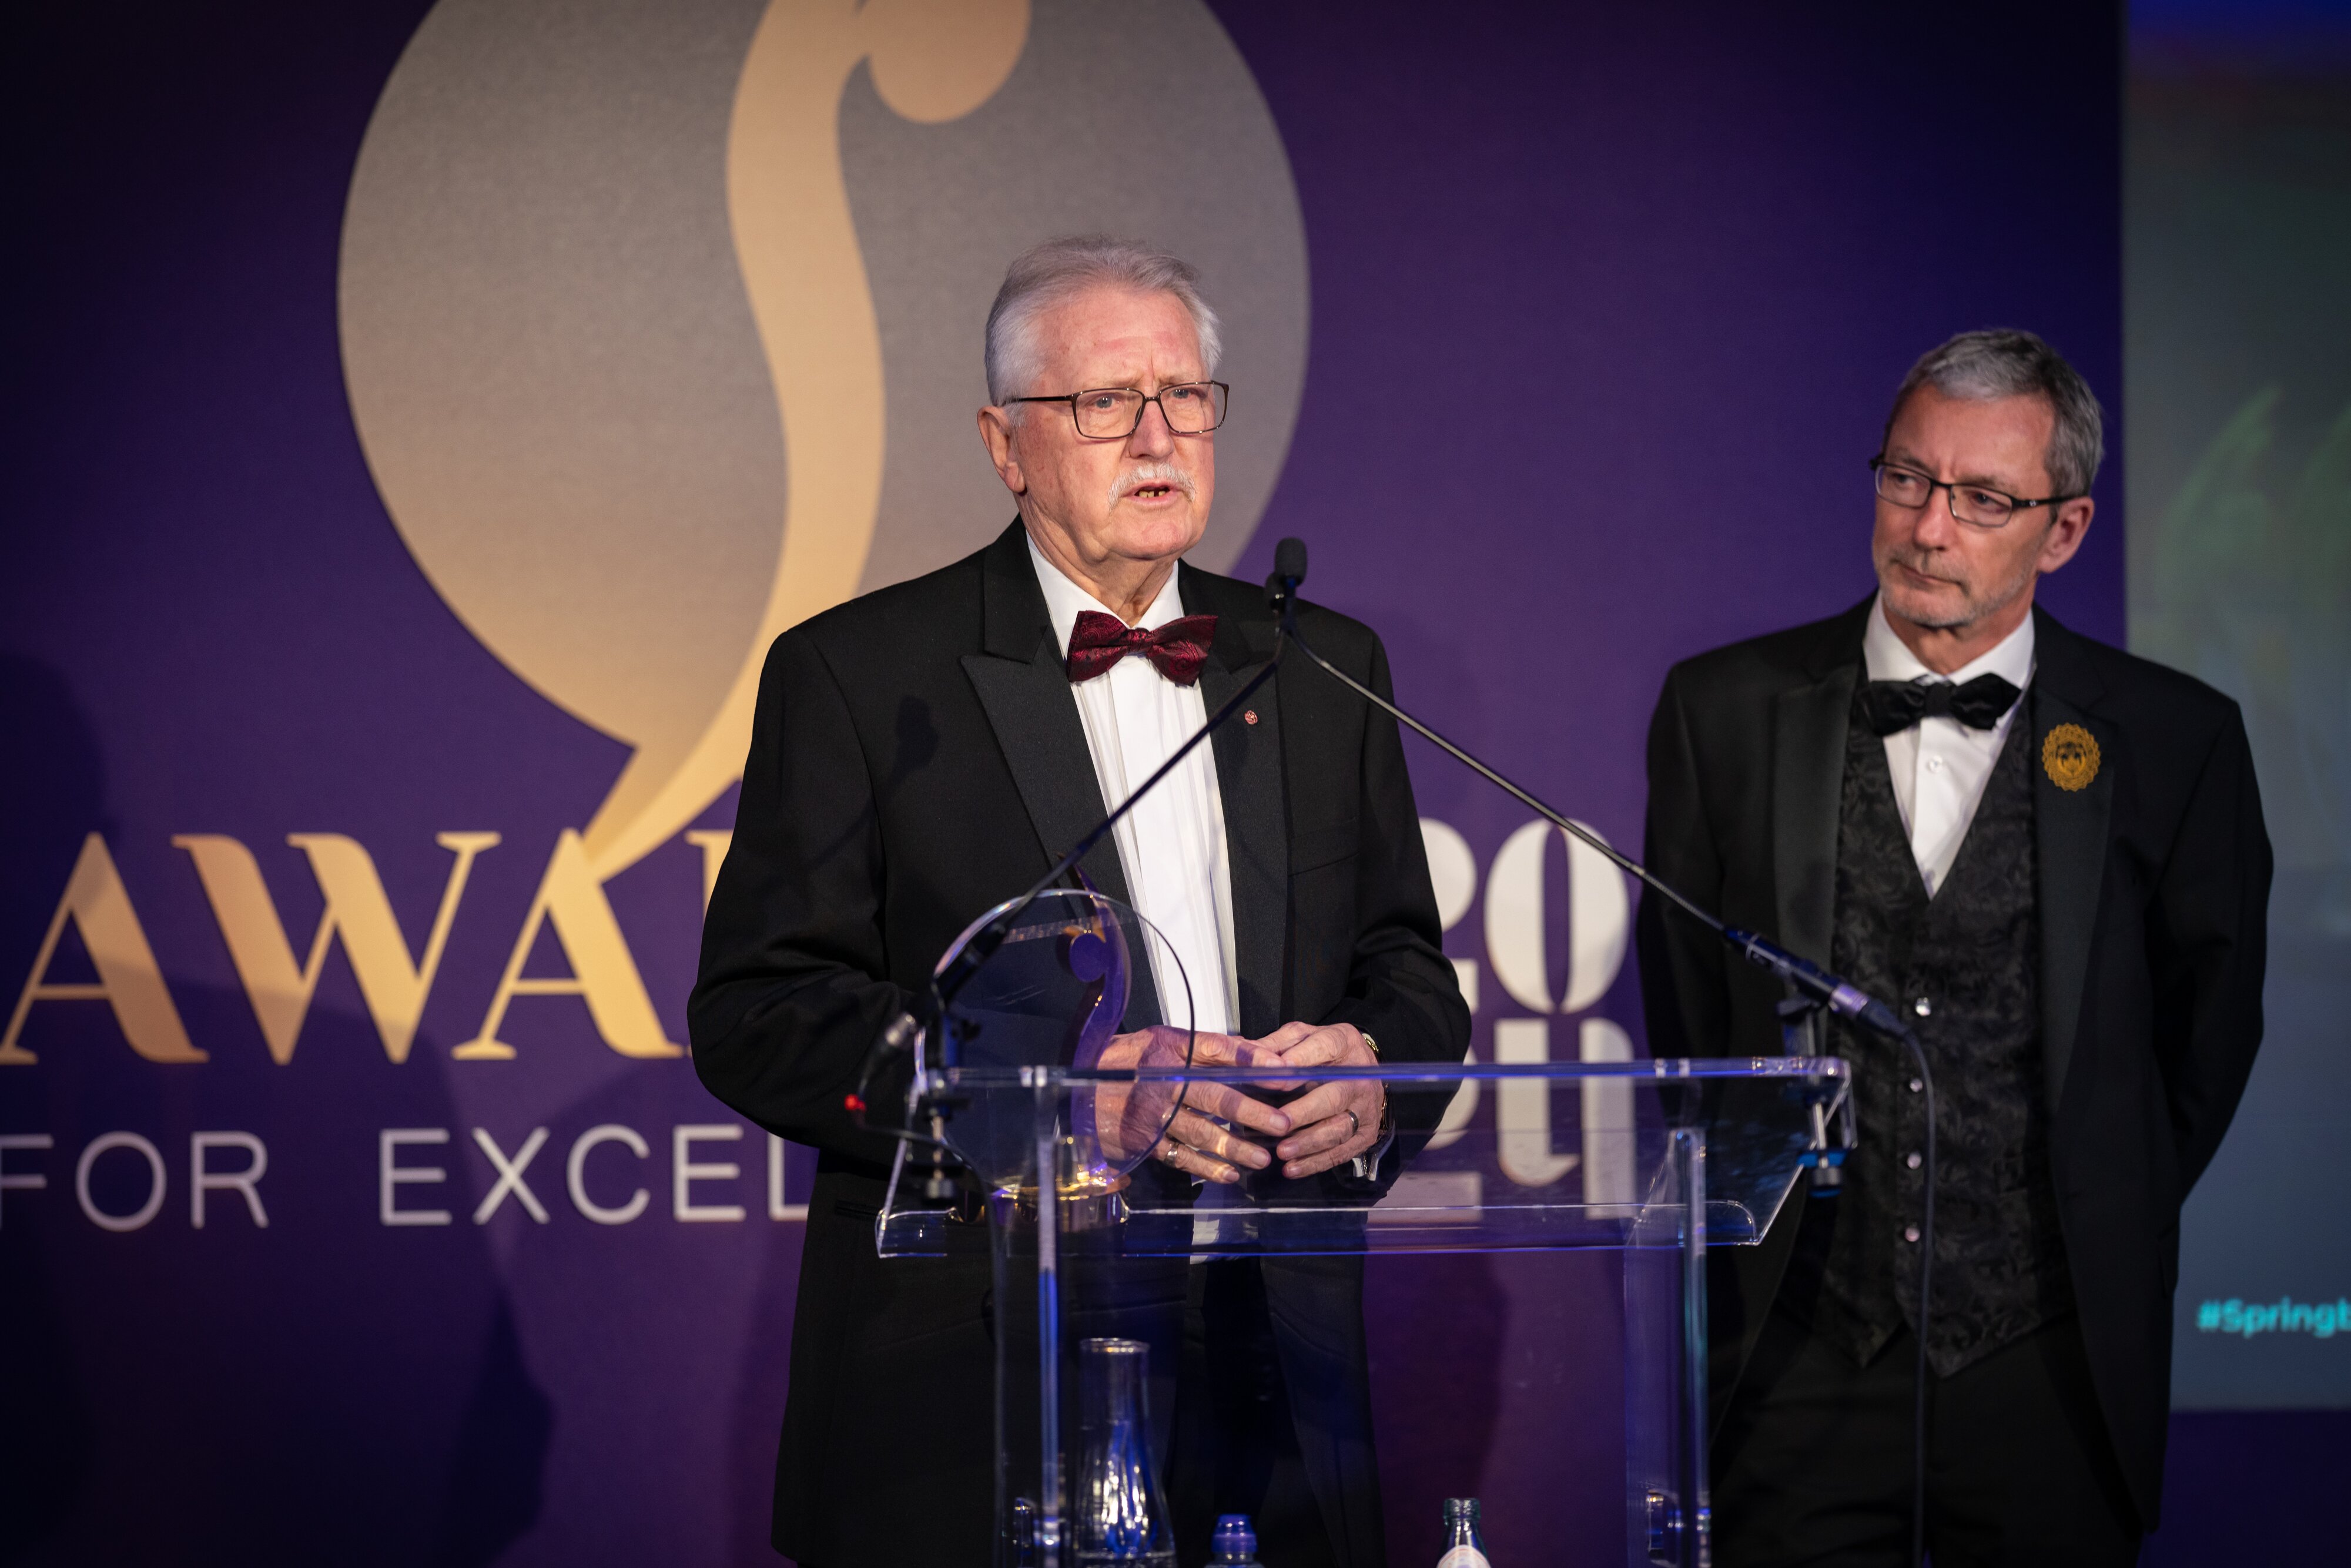 Brian Turner, David Mulcahy and Steve Munkley take top honours at Springboard awards